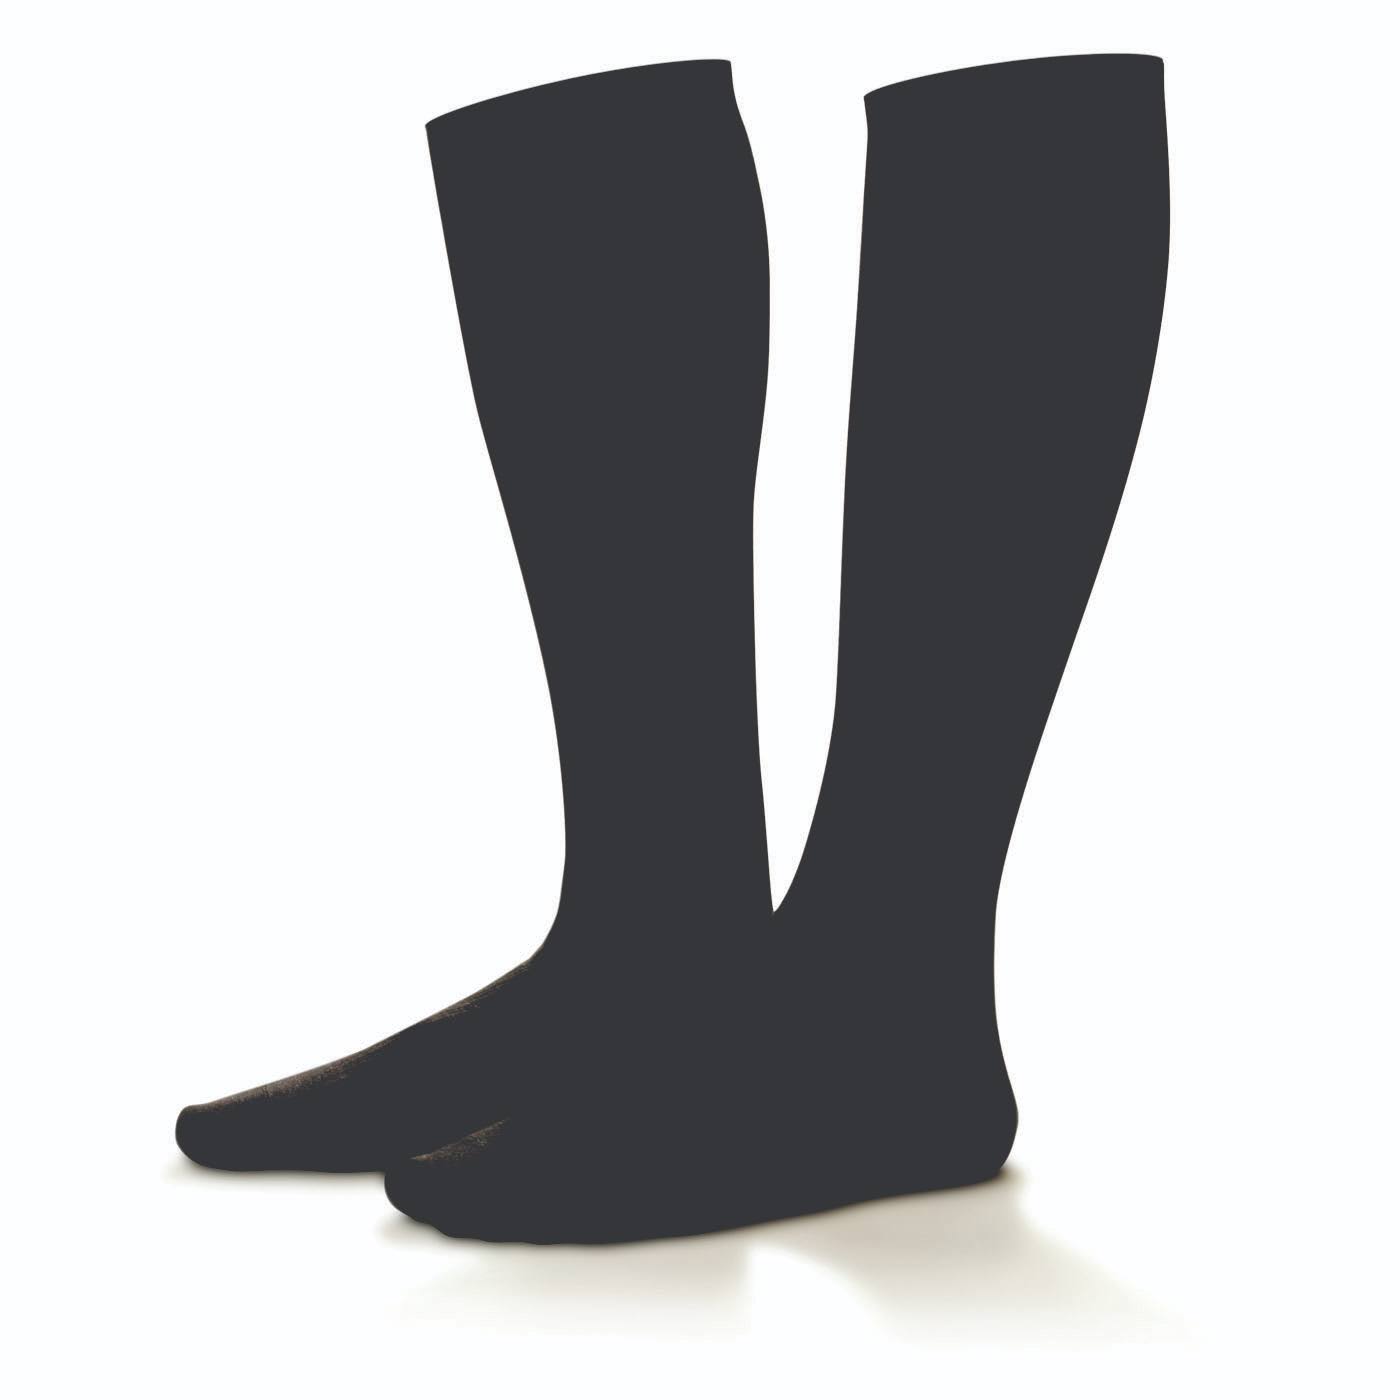 Dr. Comfort Men's Cotton Dress 10-15 Knee High Compression Socks Black Large